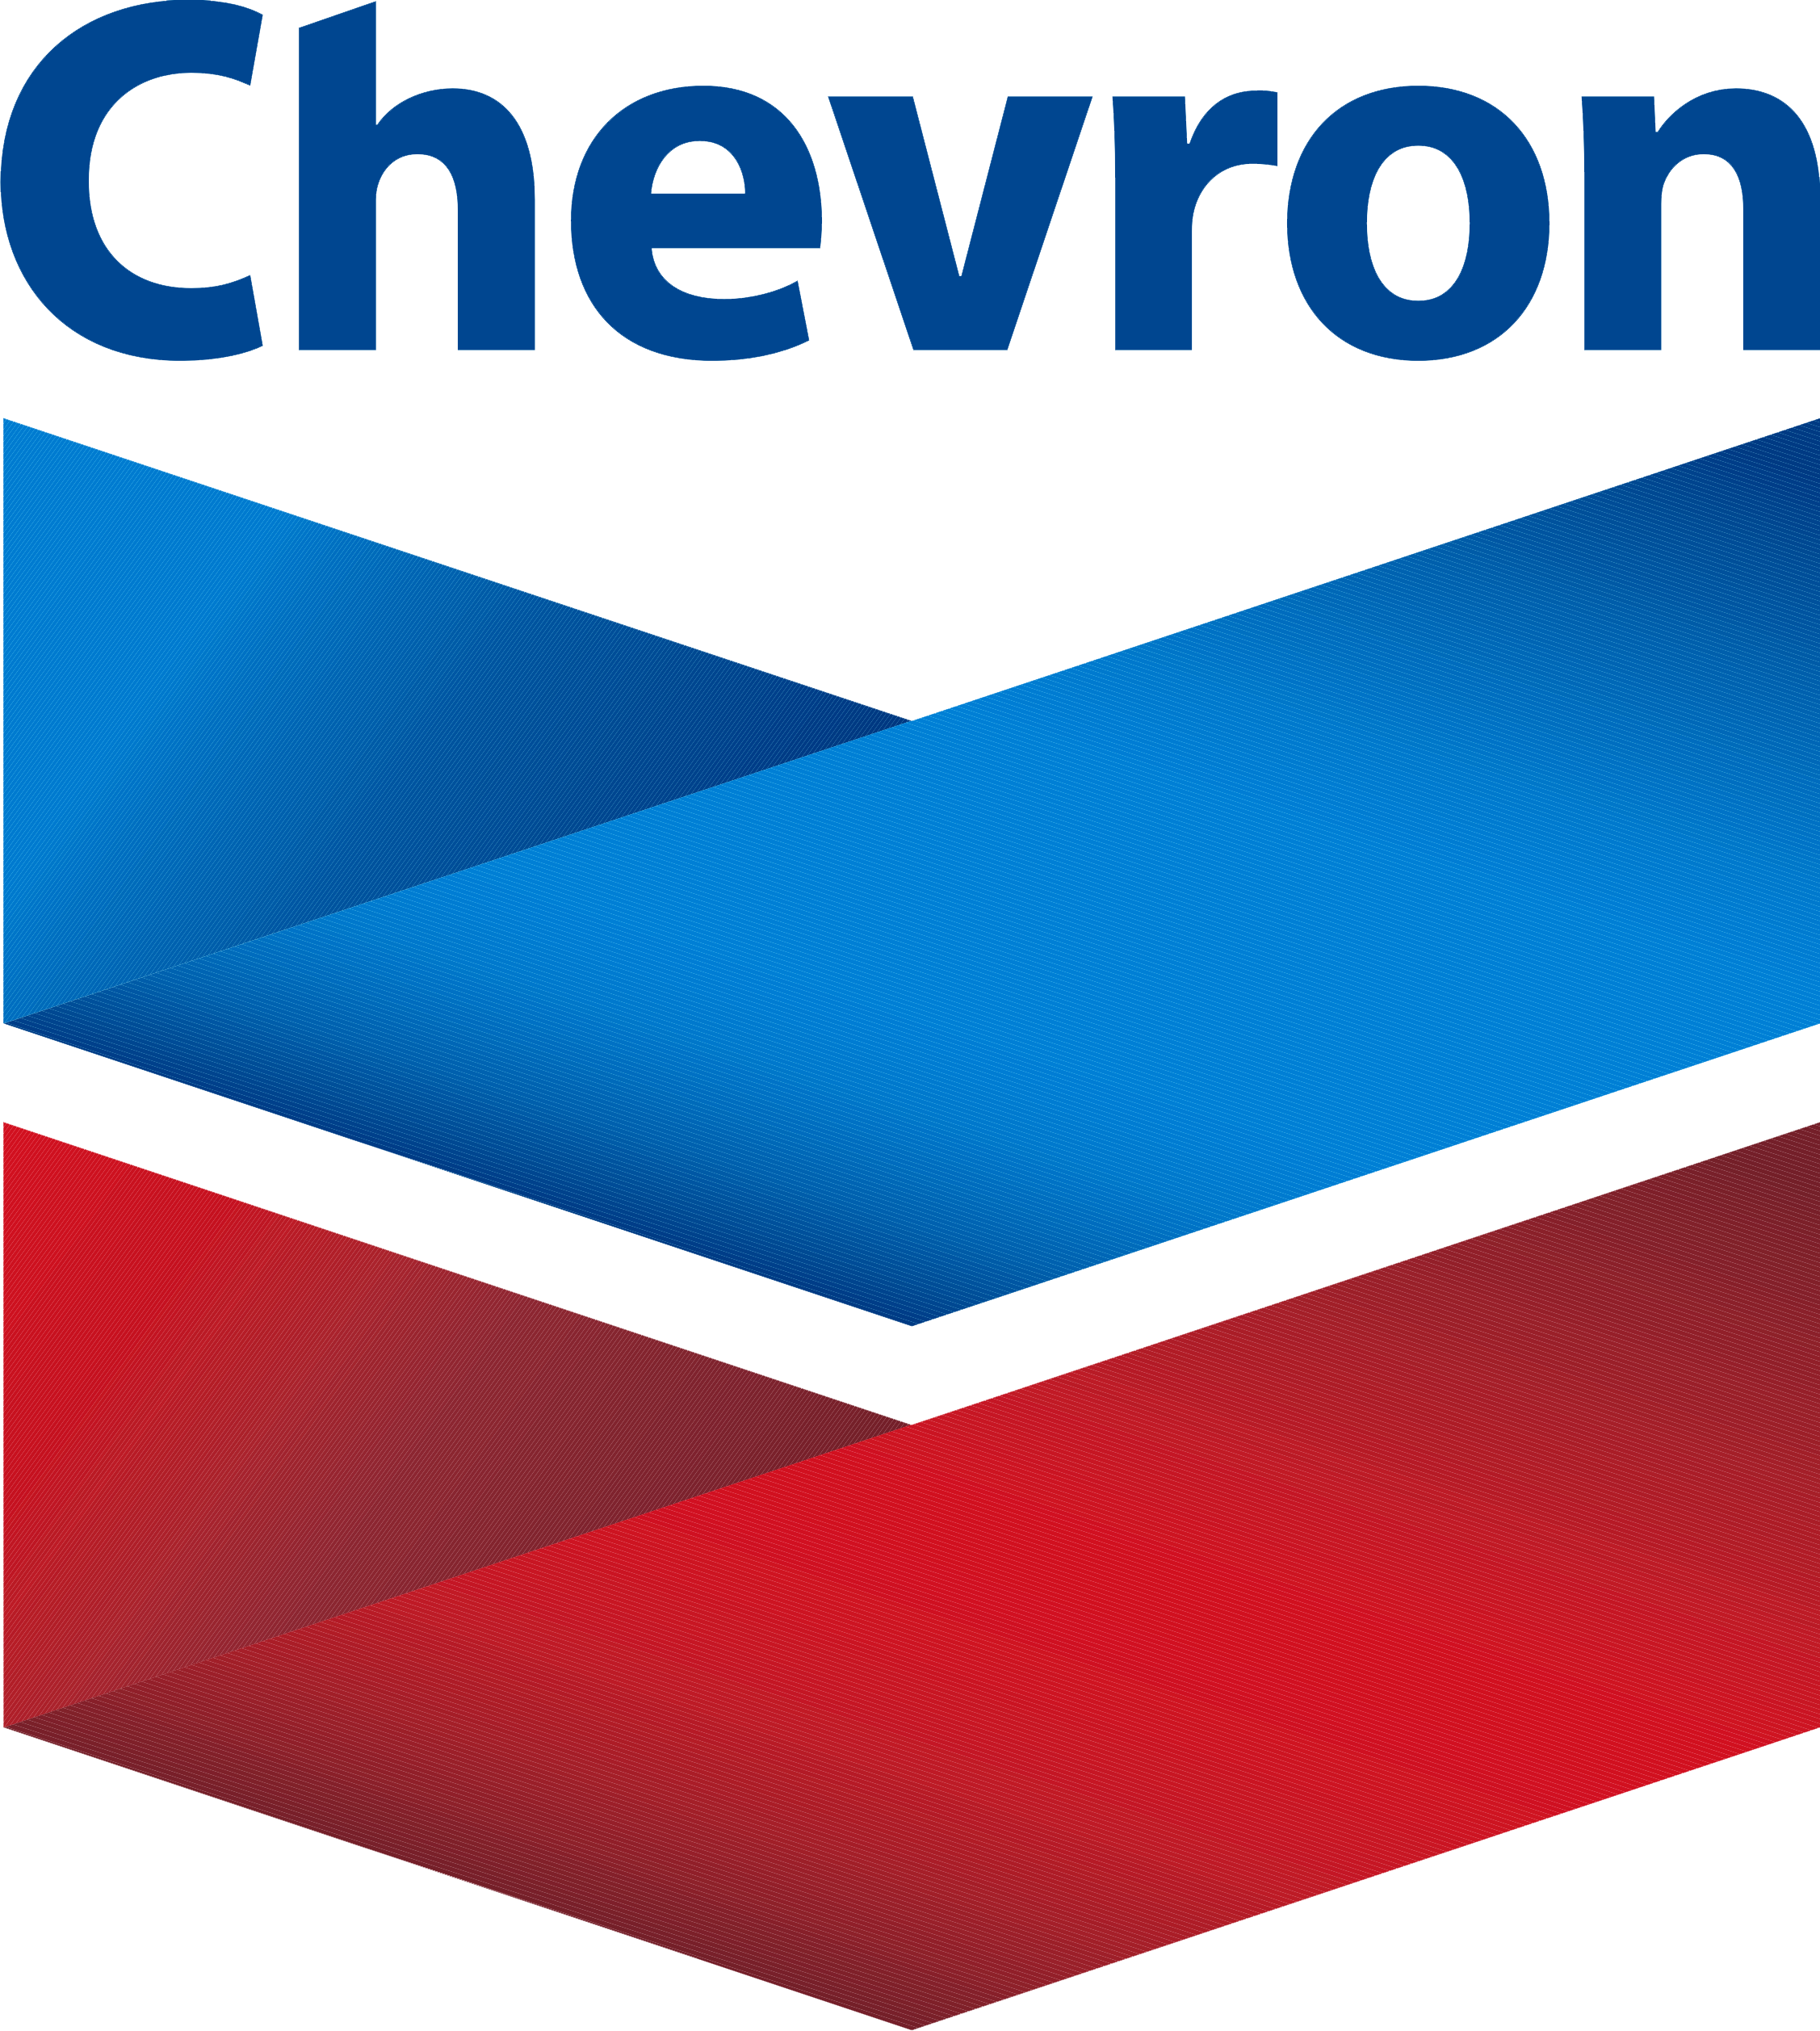 chevron_logo.png